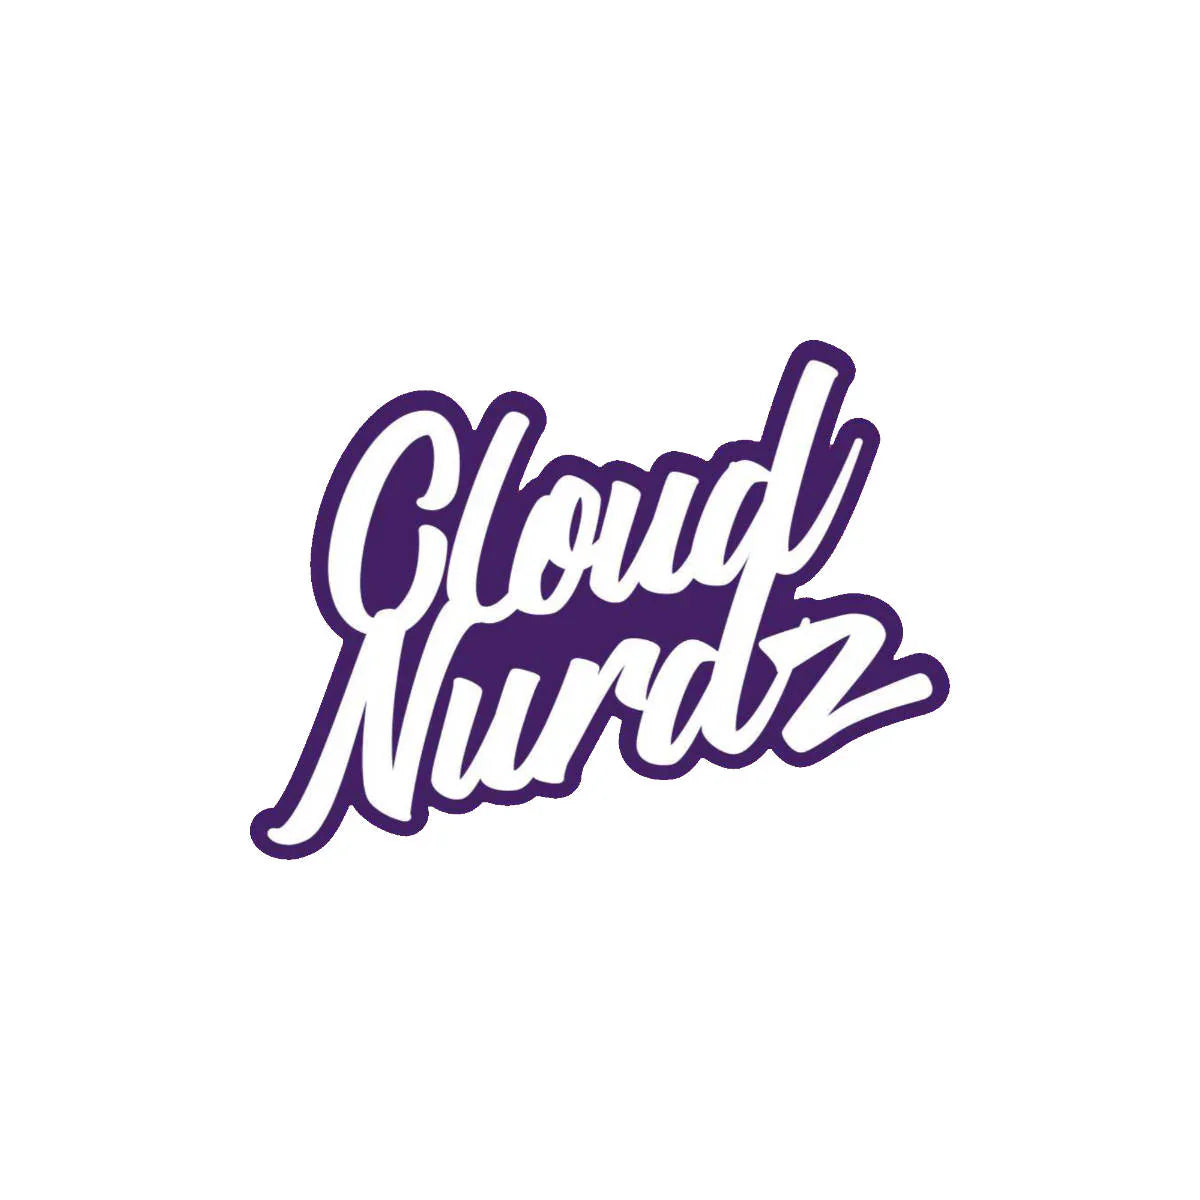 Cloud Nurdz eJuice Wholesale